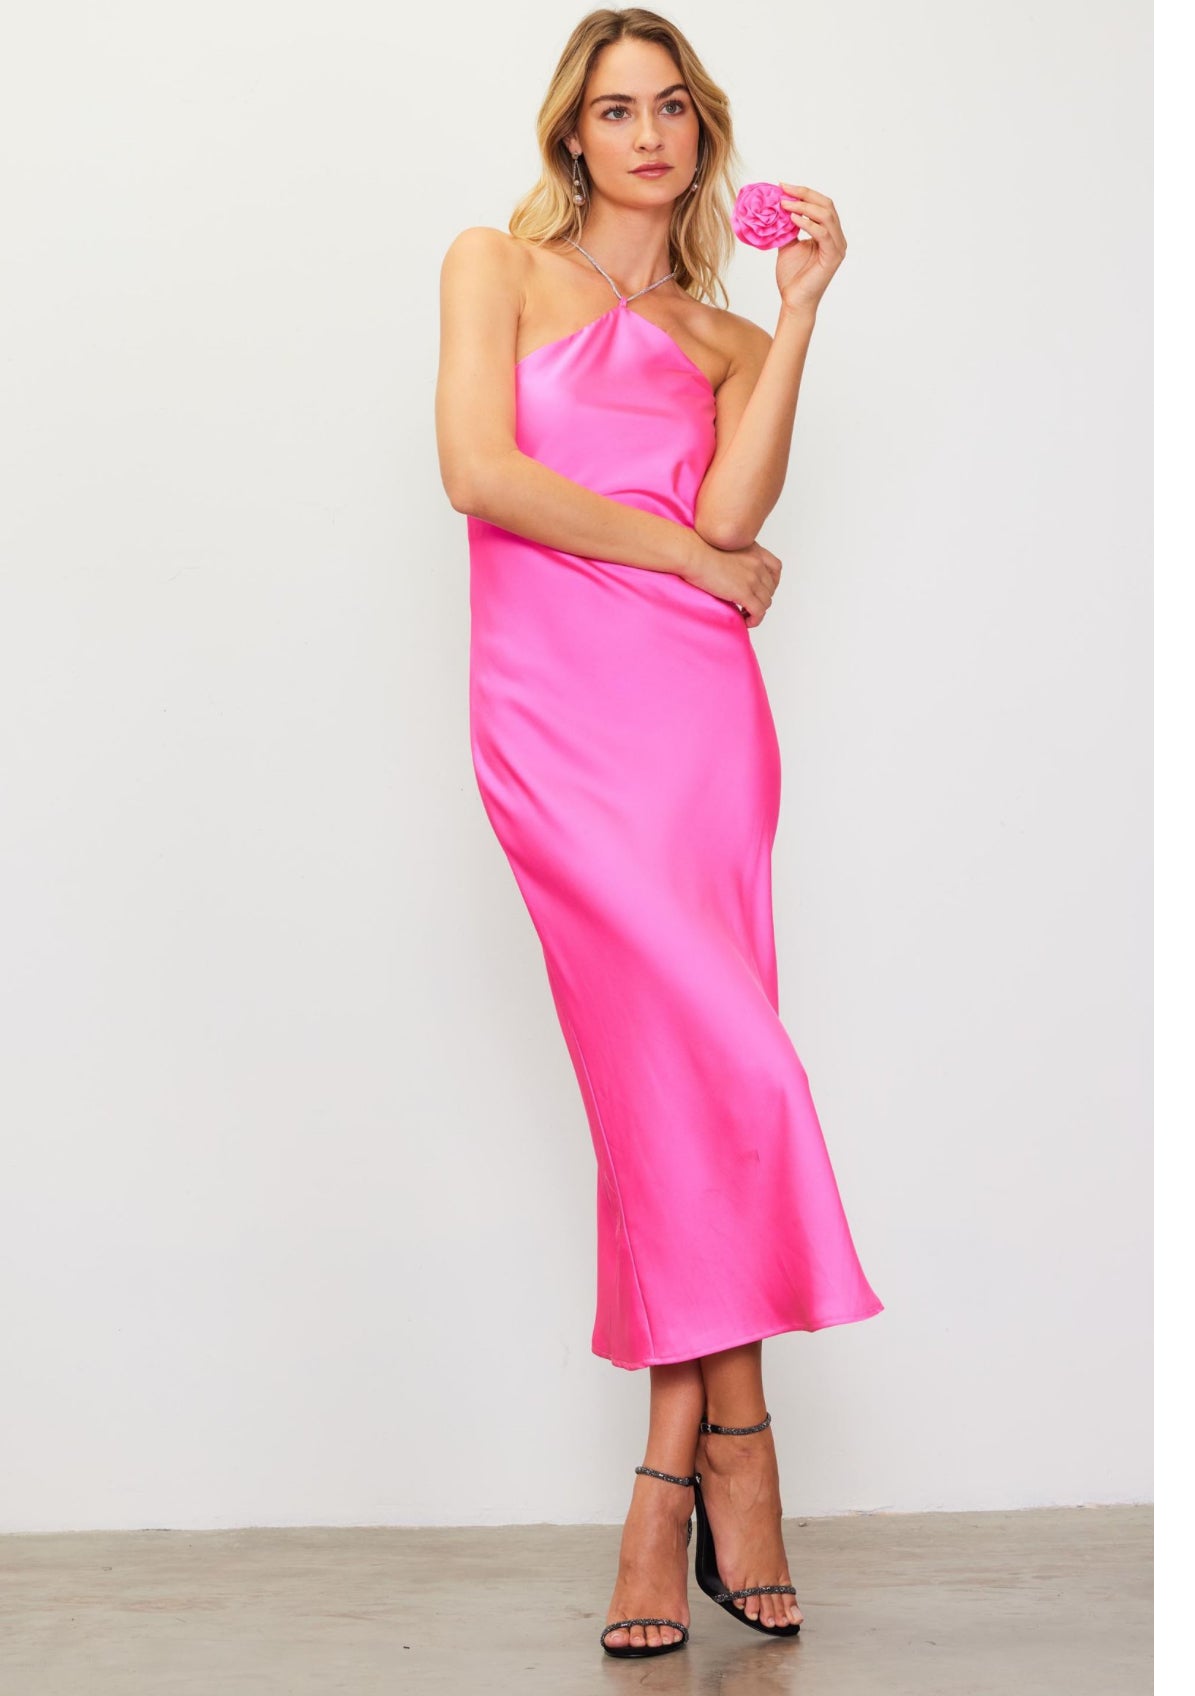 Burble-gum Pink Rosette Halter Dress With Embellished Strap